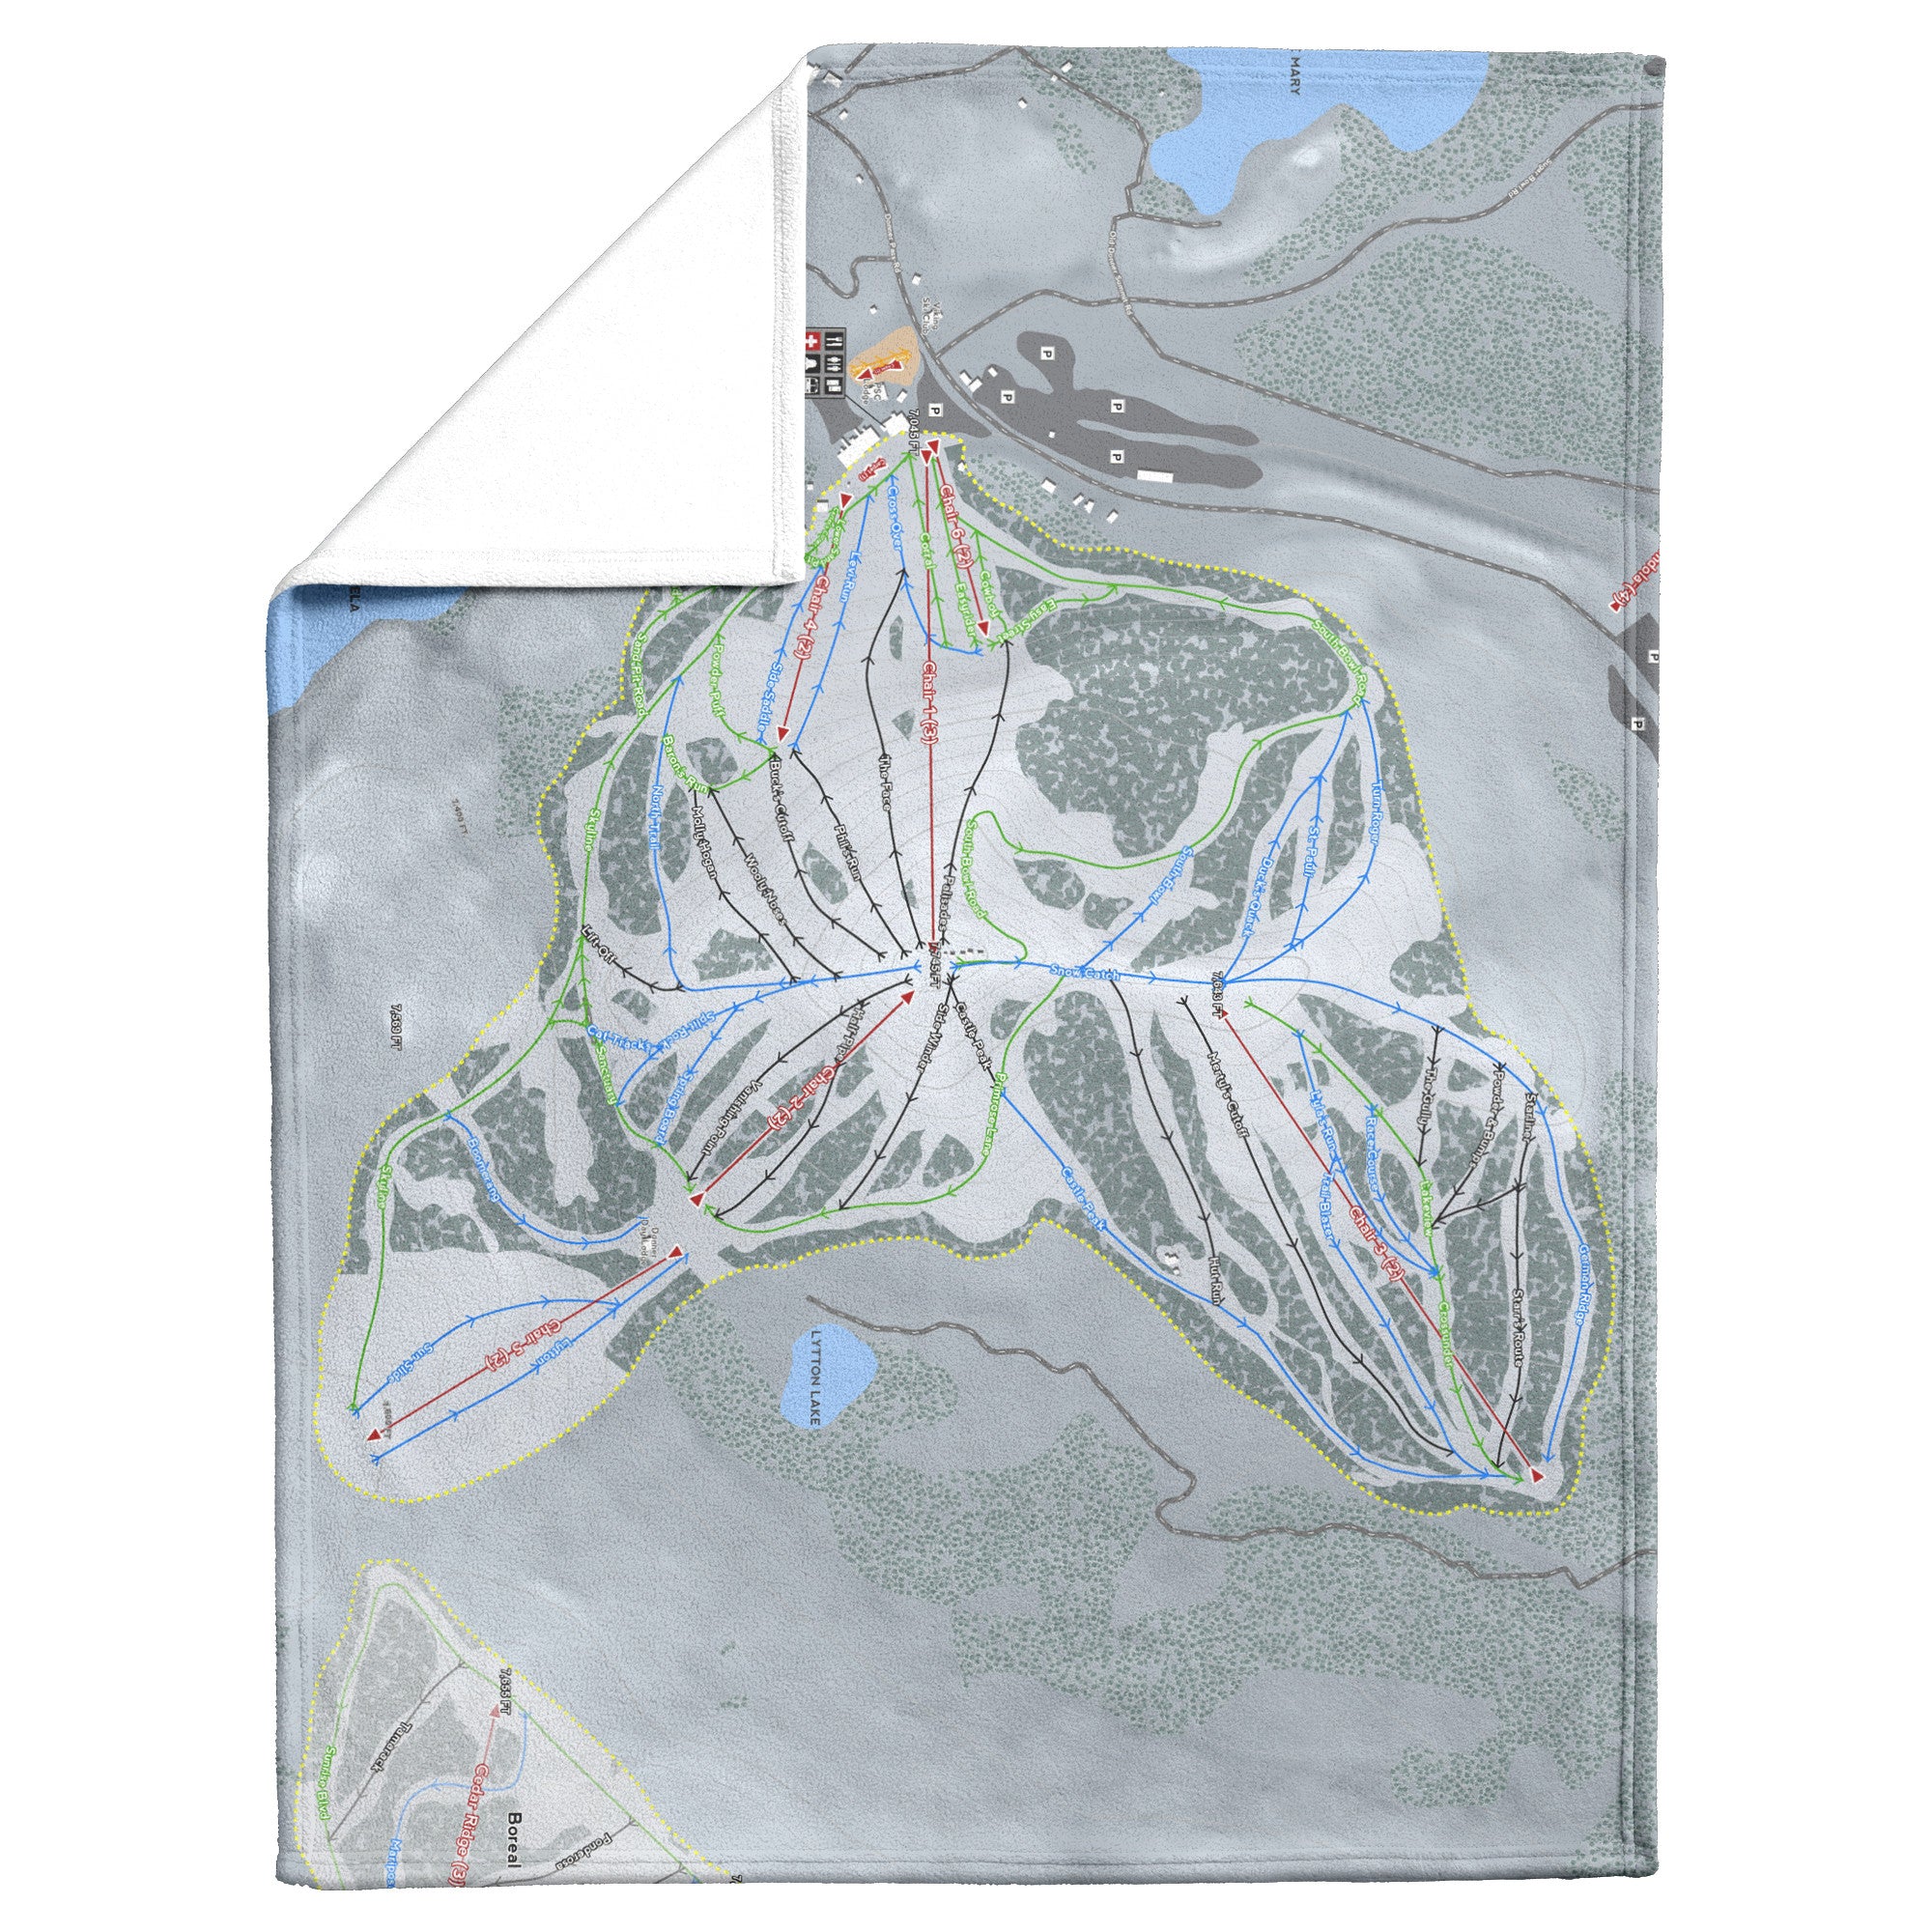 Donner Ski Ranch, California Ski Resort Map Blanket